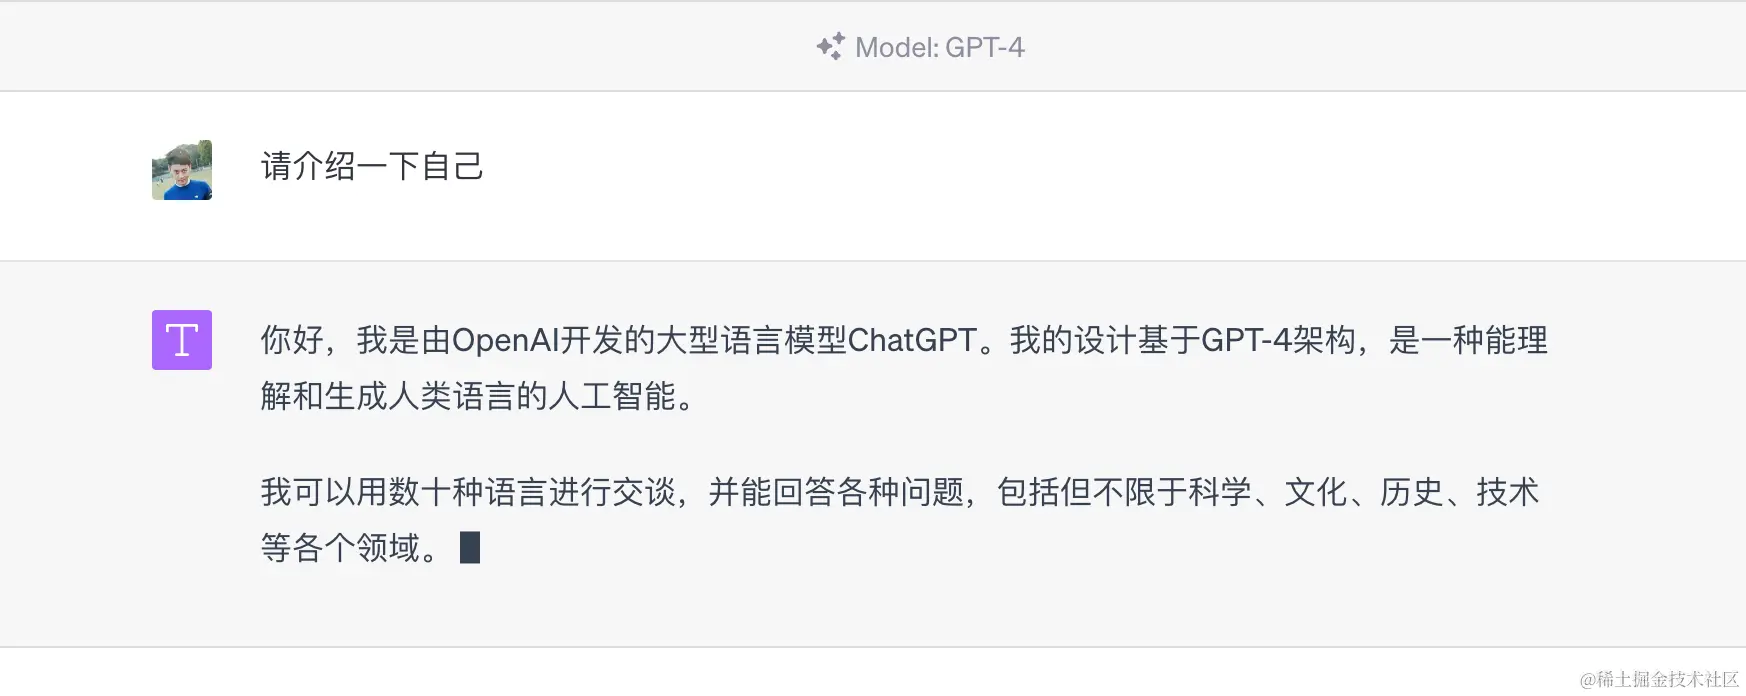 在 ChatGPT 上使用 GPT-4